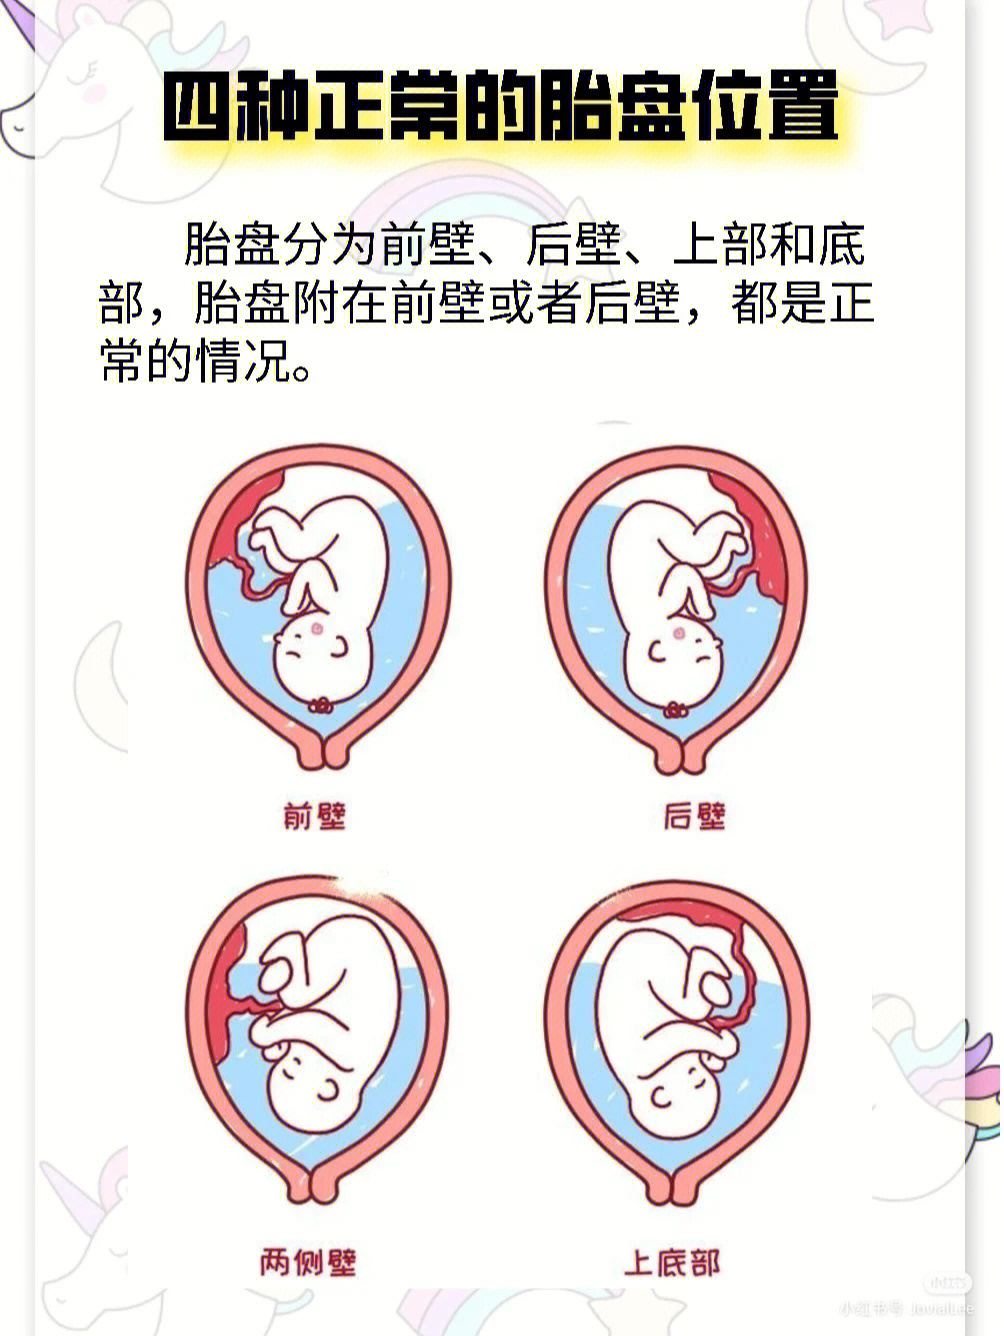 各种胎盘位置图 前壁图片